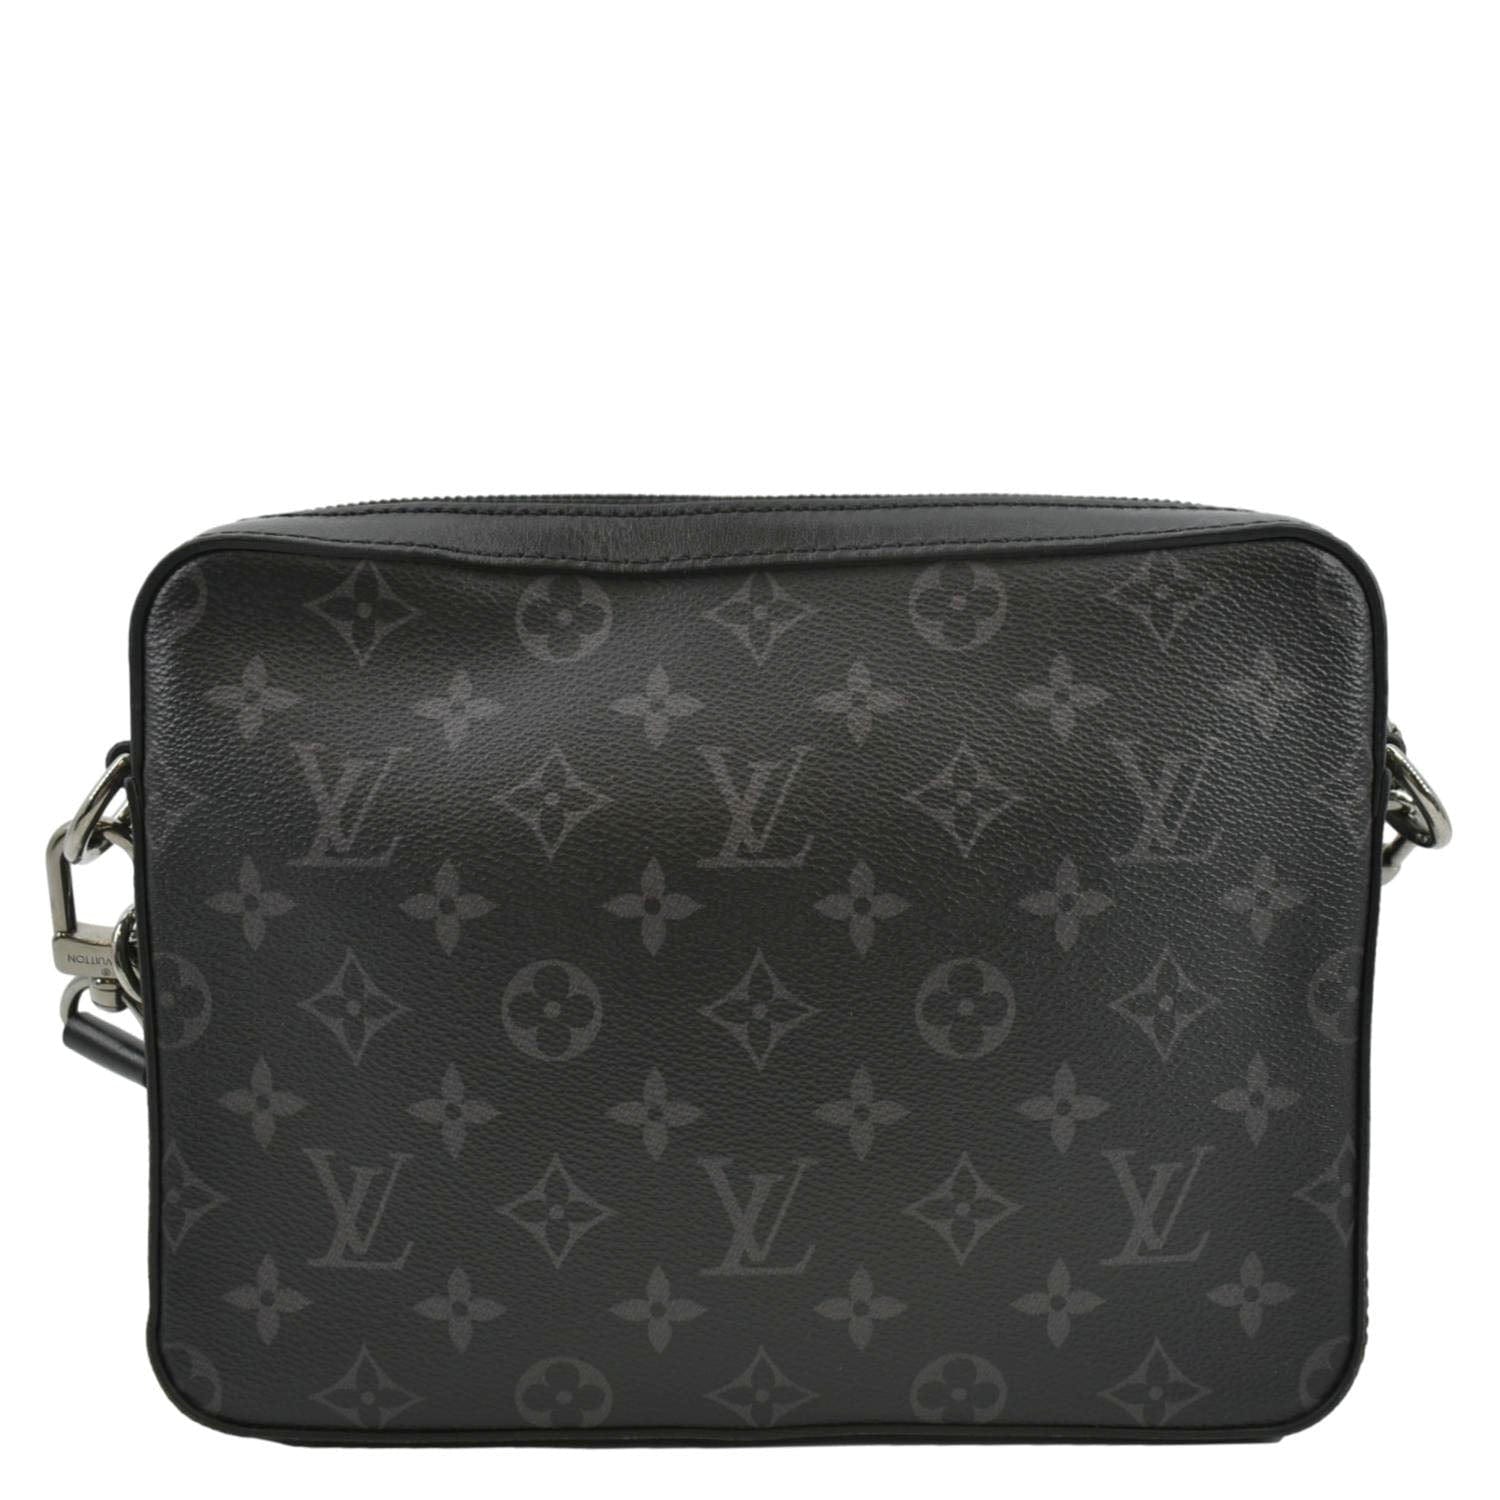 Men's Louis Vuitton Messenger bags from $800